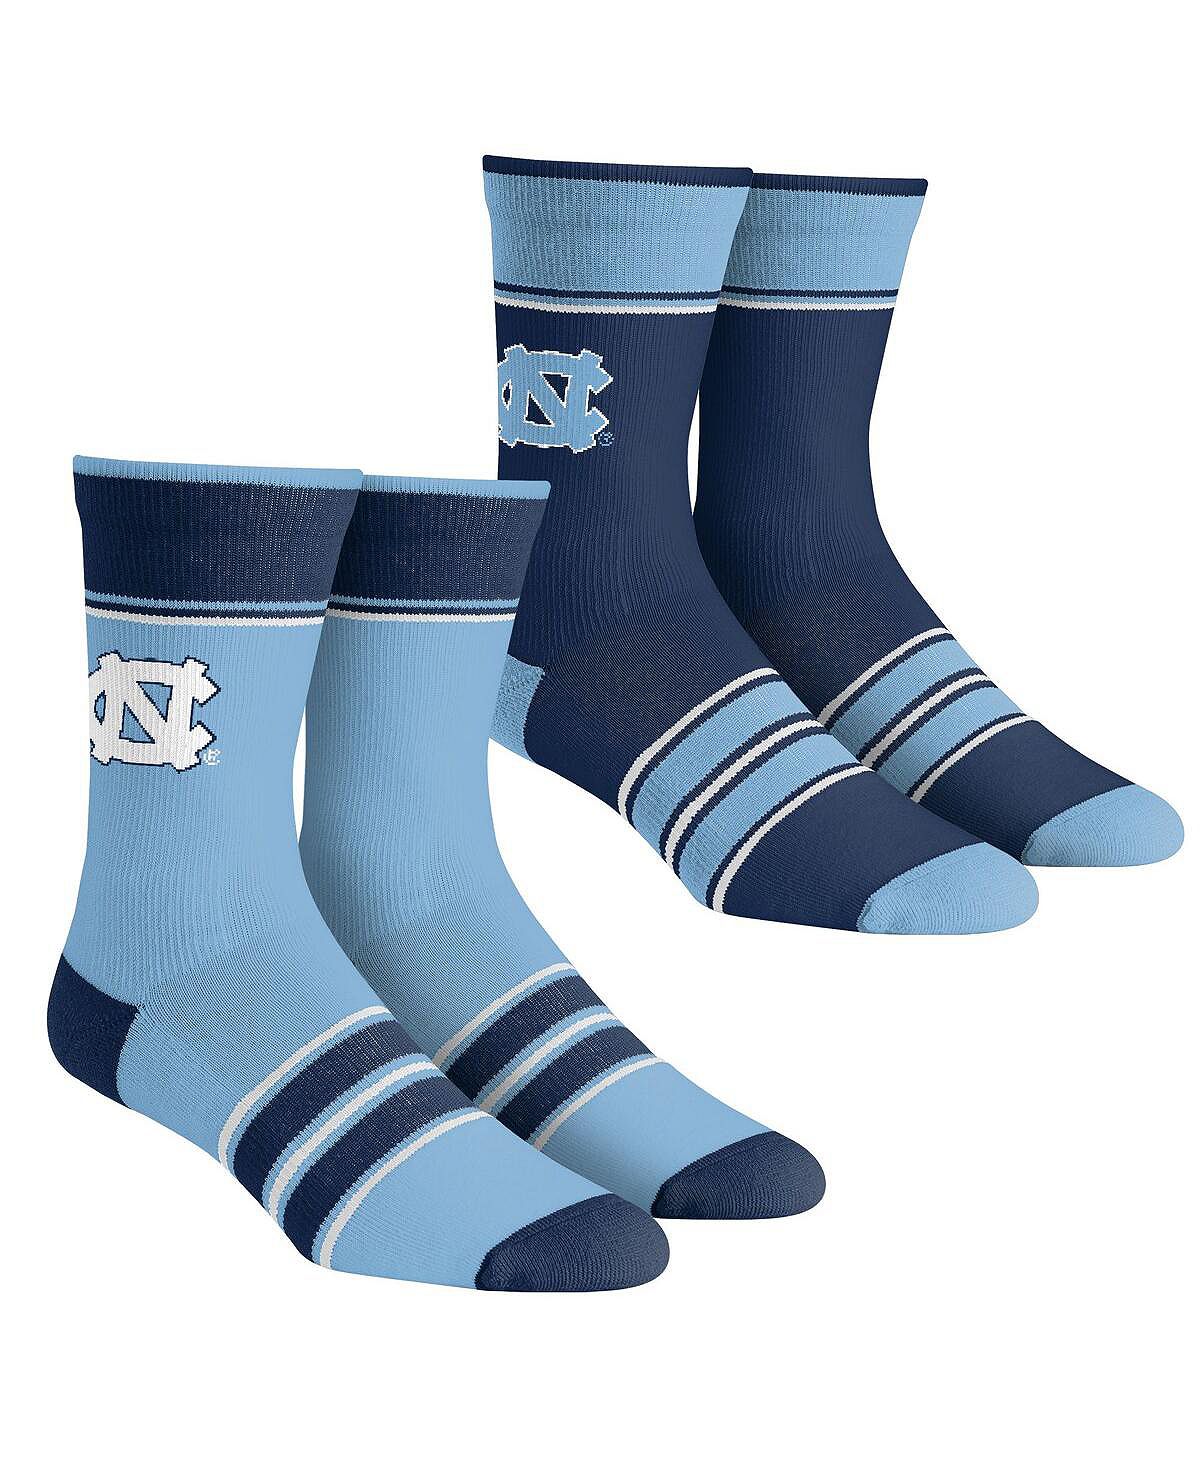 Мужские и женские носки North Carolina Tar Heels, комплект из 2 носков Team Crew в несколько полосок Rock 'Em комплект носков uniqlo sports socks 3 пары черный